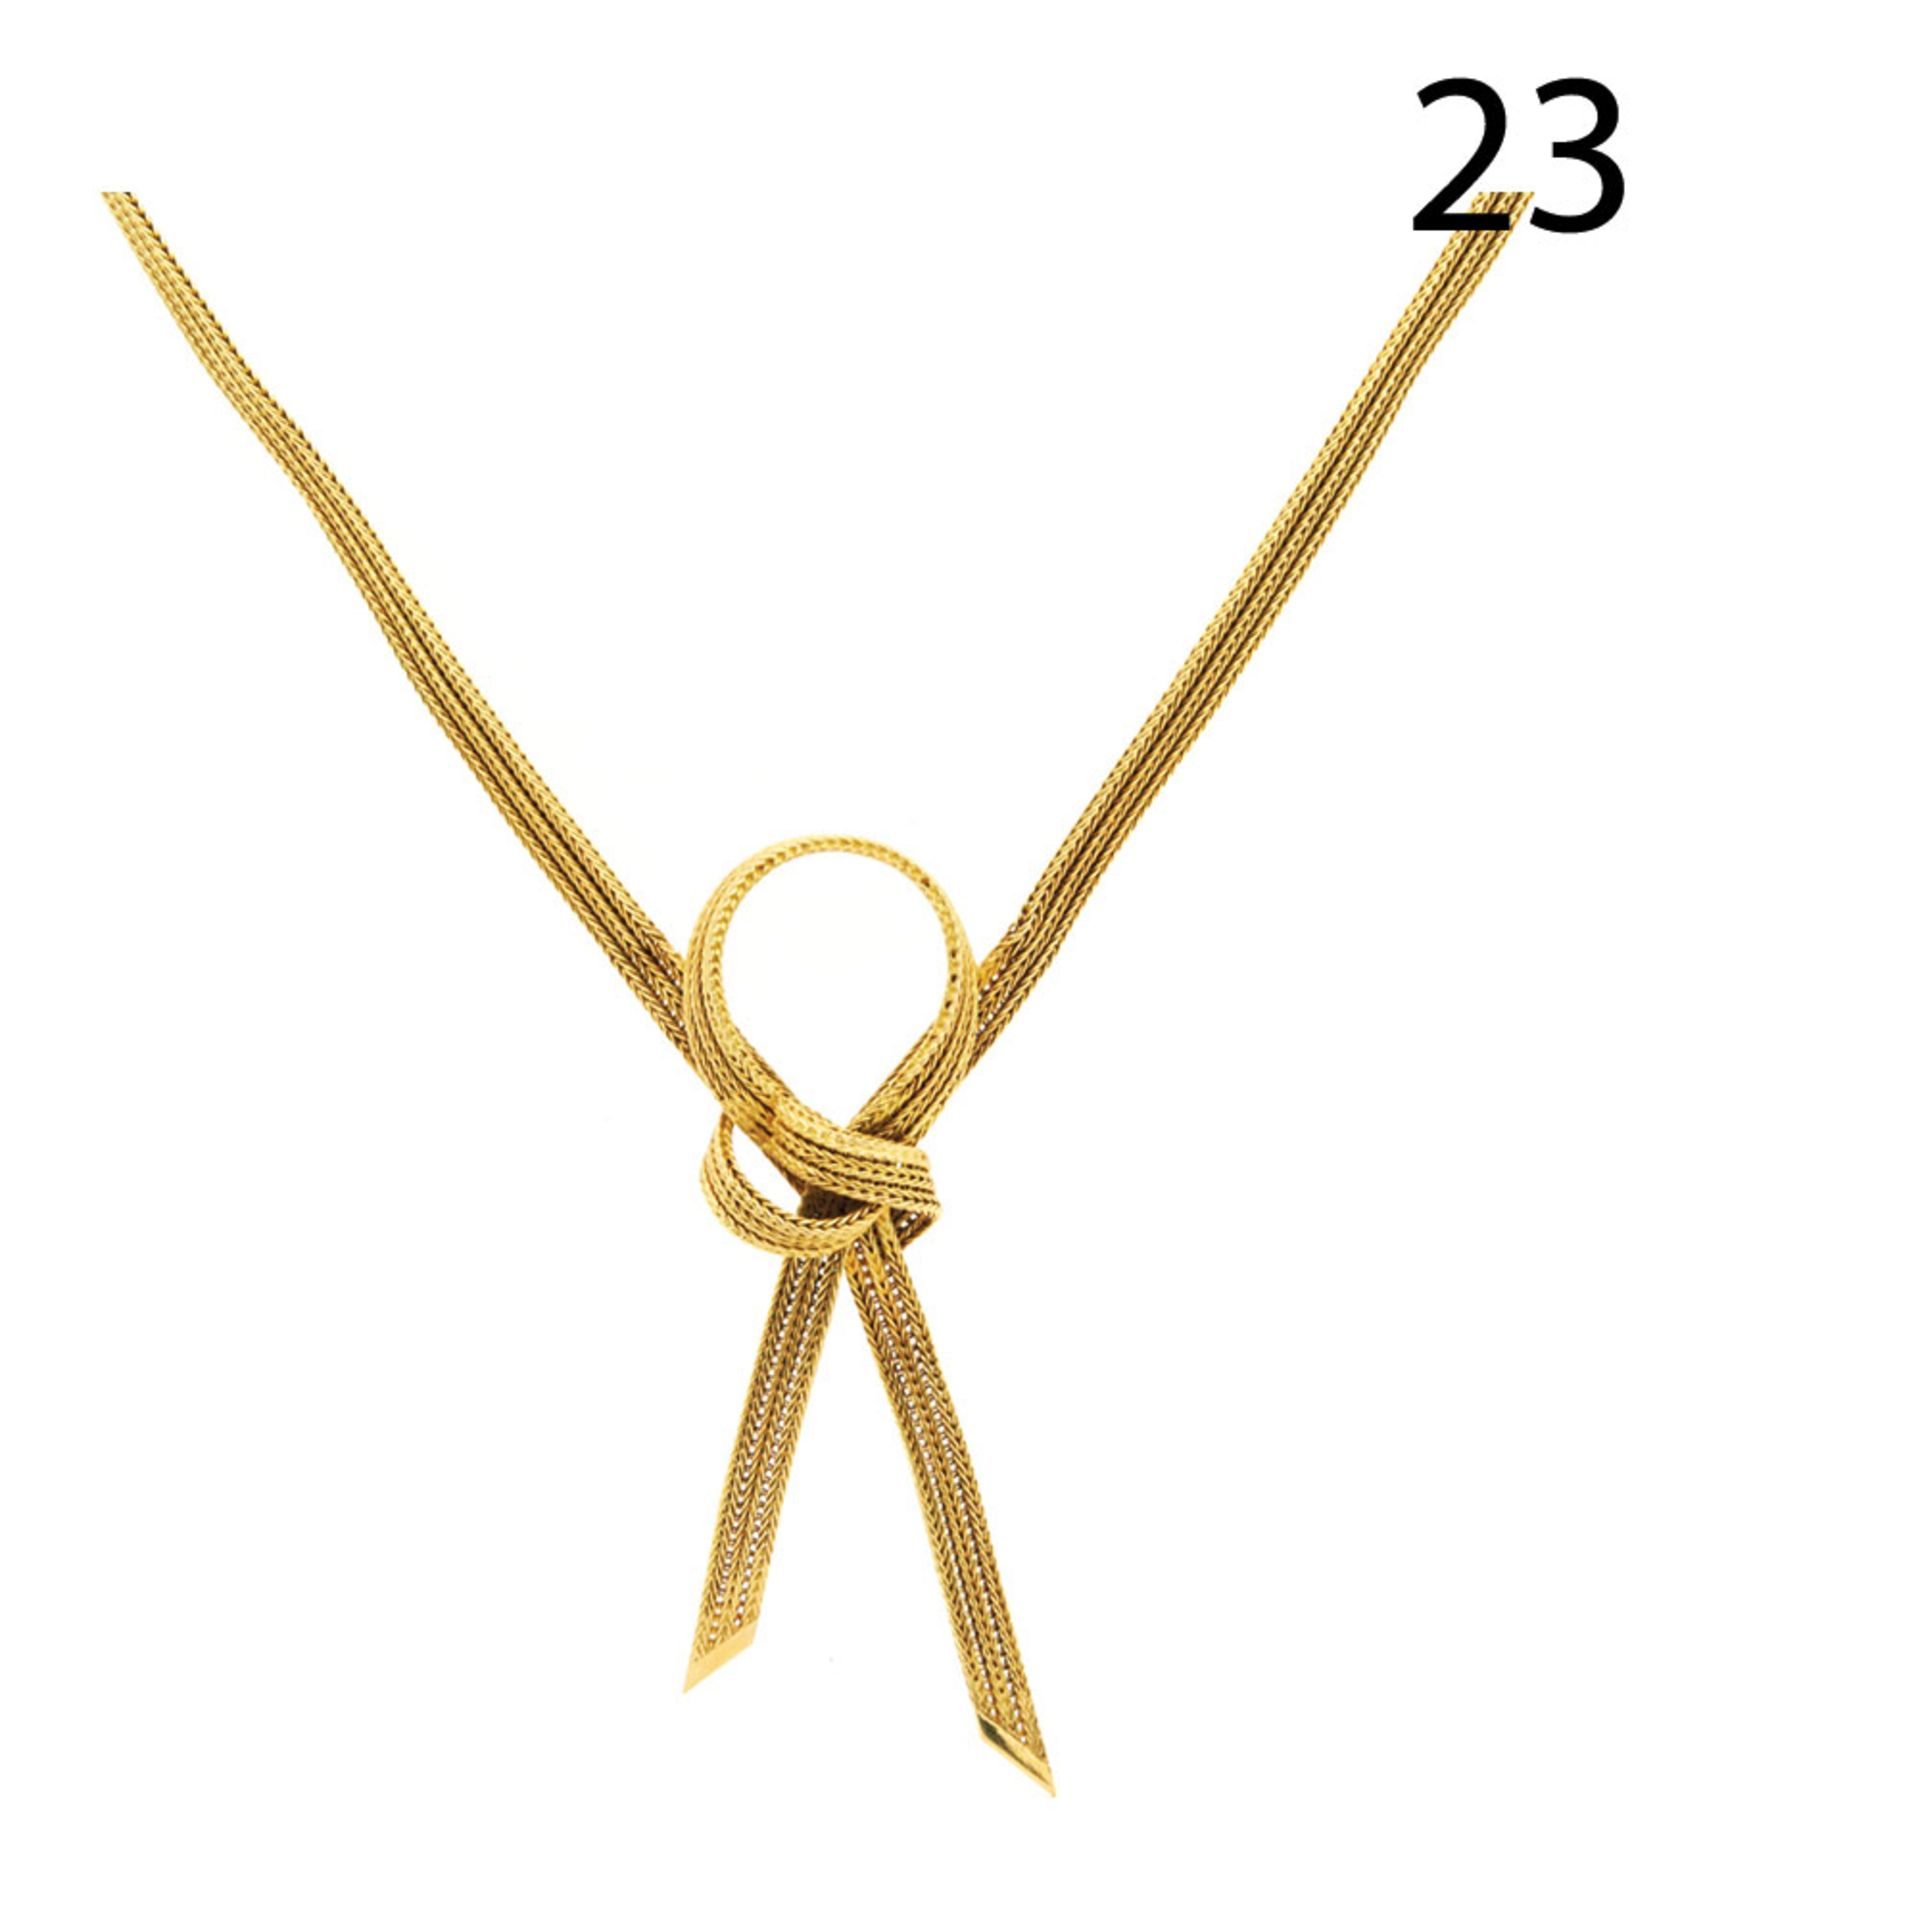 Gold necklace - Collar semirrígido en oro con lazada central. Long.: 40 cm. Peso: 29,6 gr.